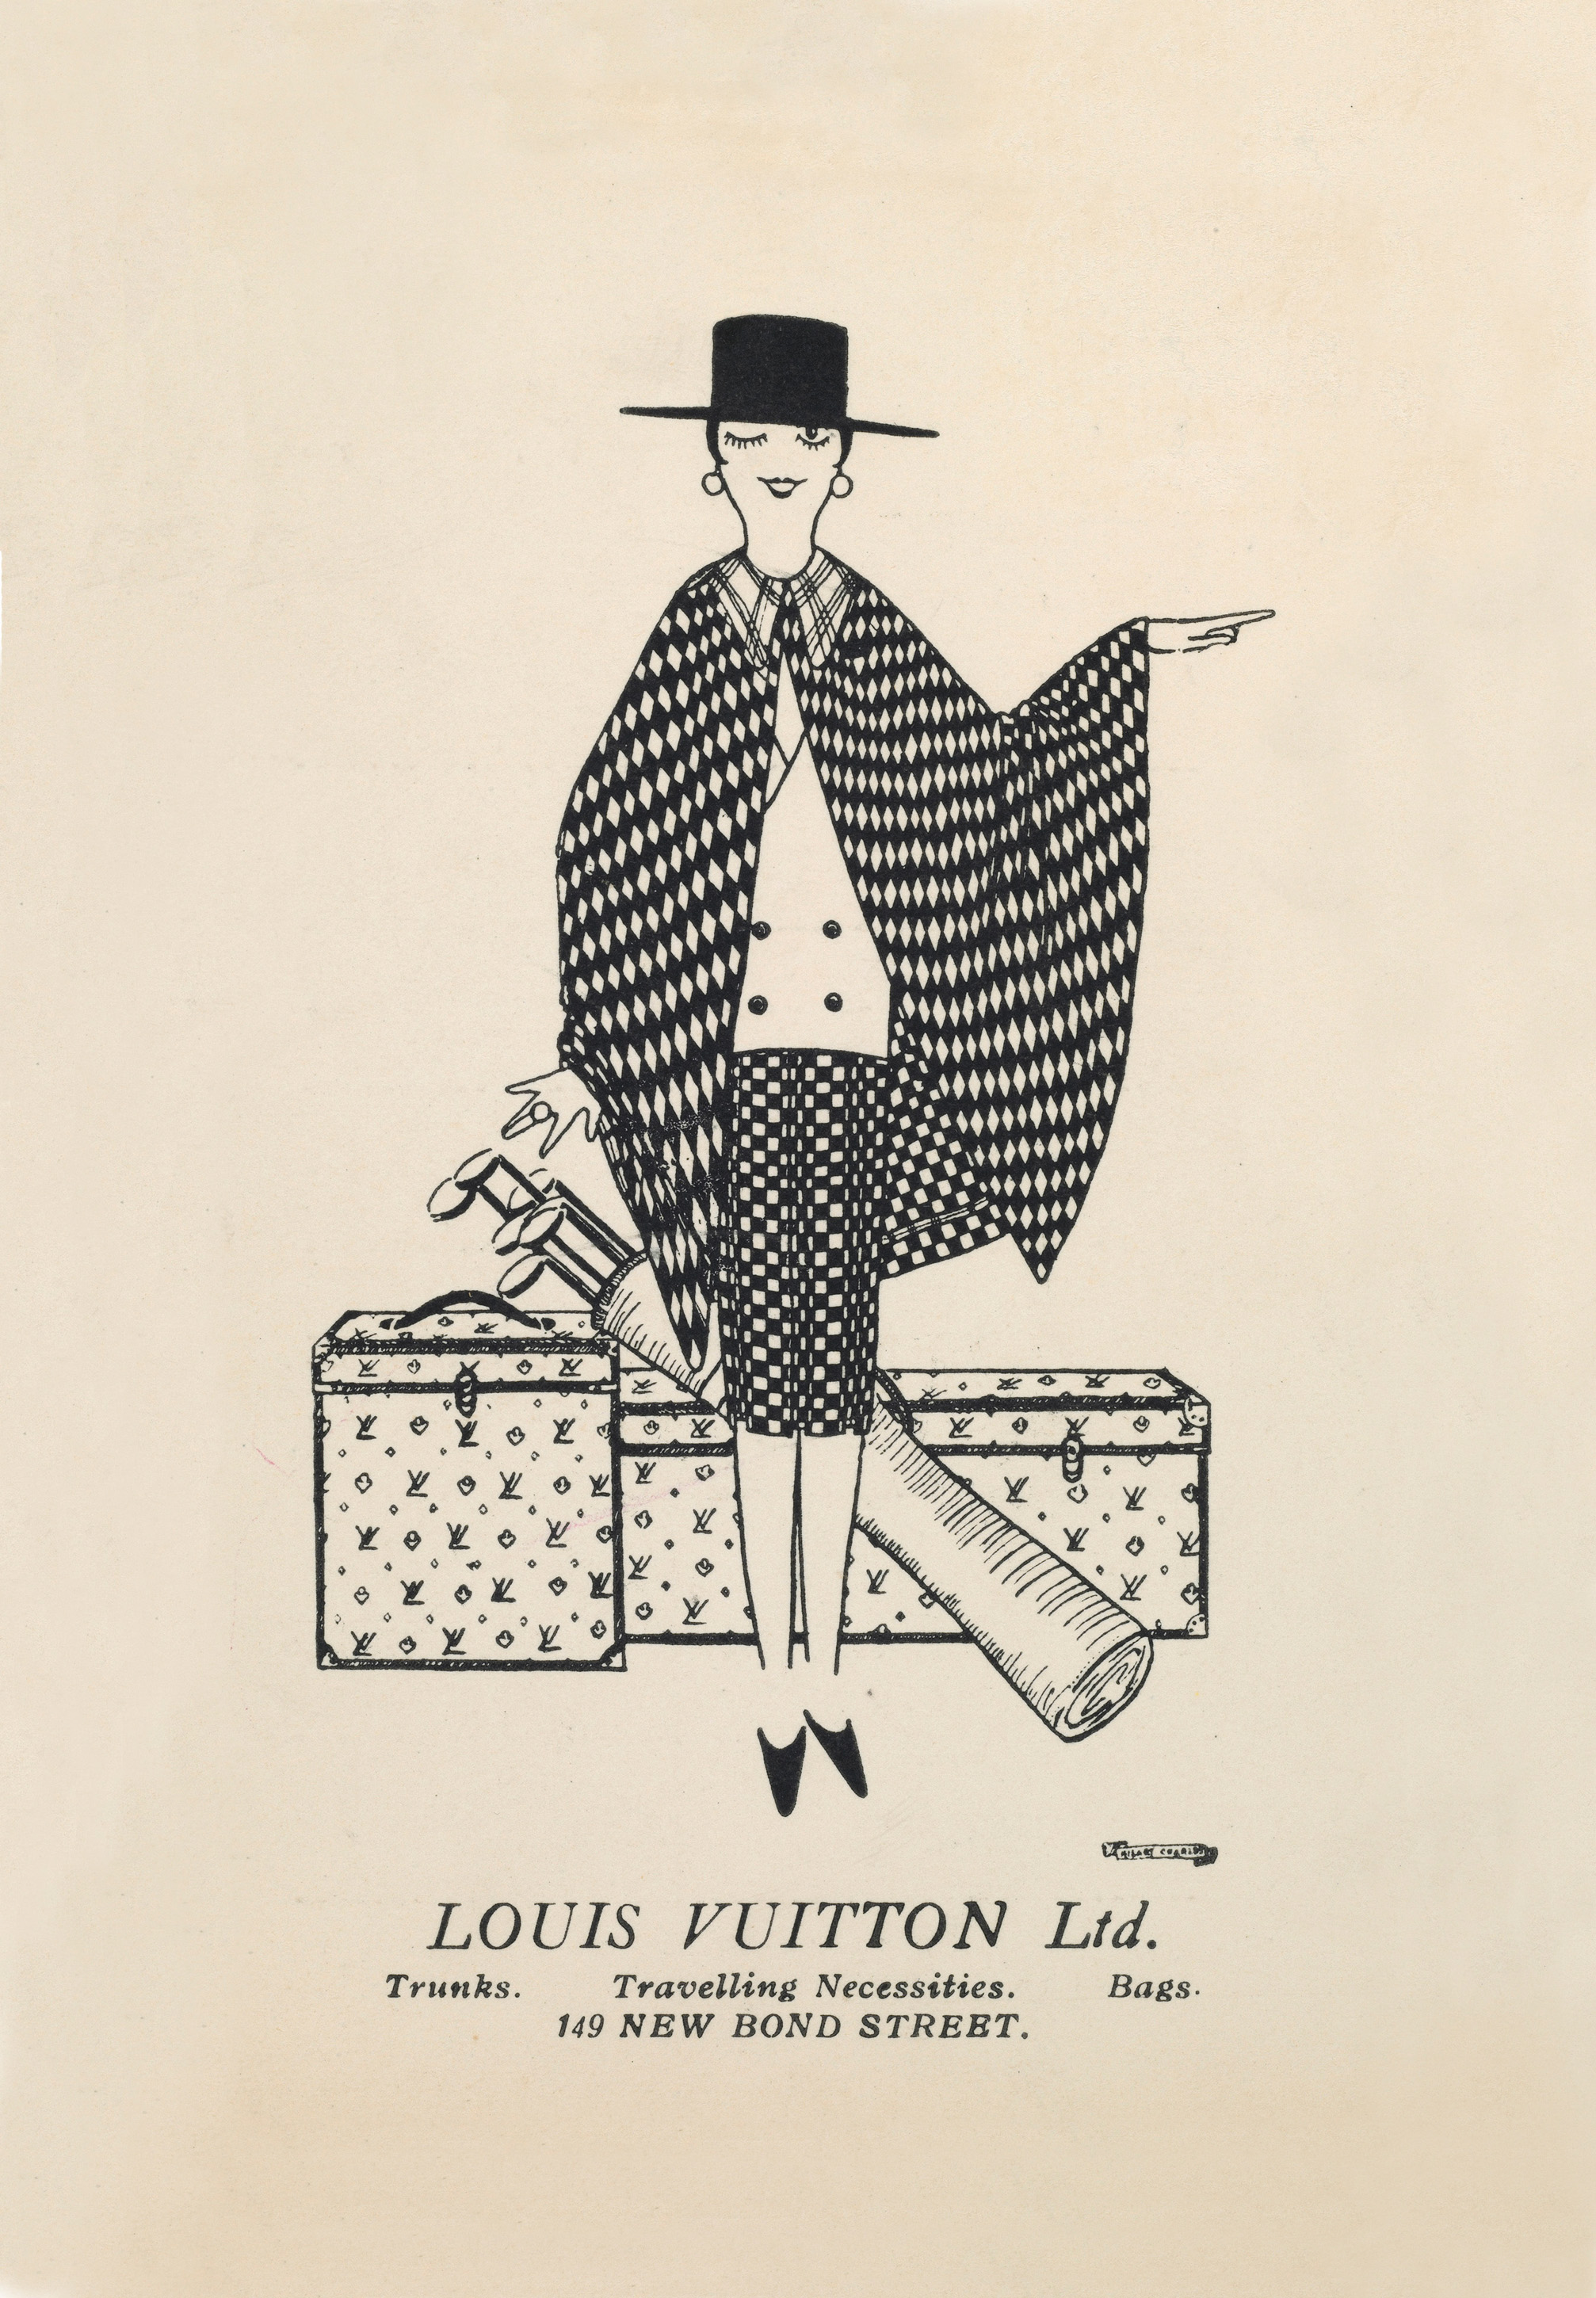 Baran de Bordeaux - Just in, this stunning vintage Louis Vuitton